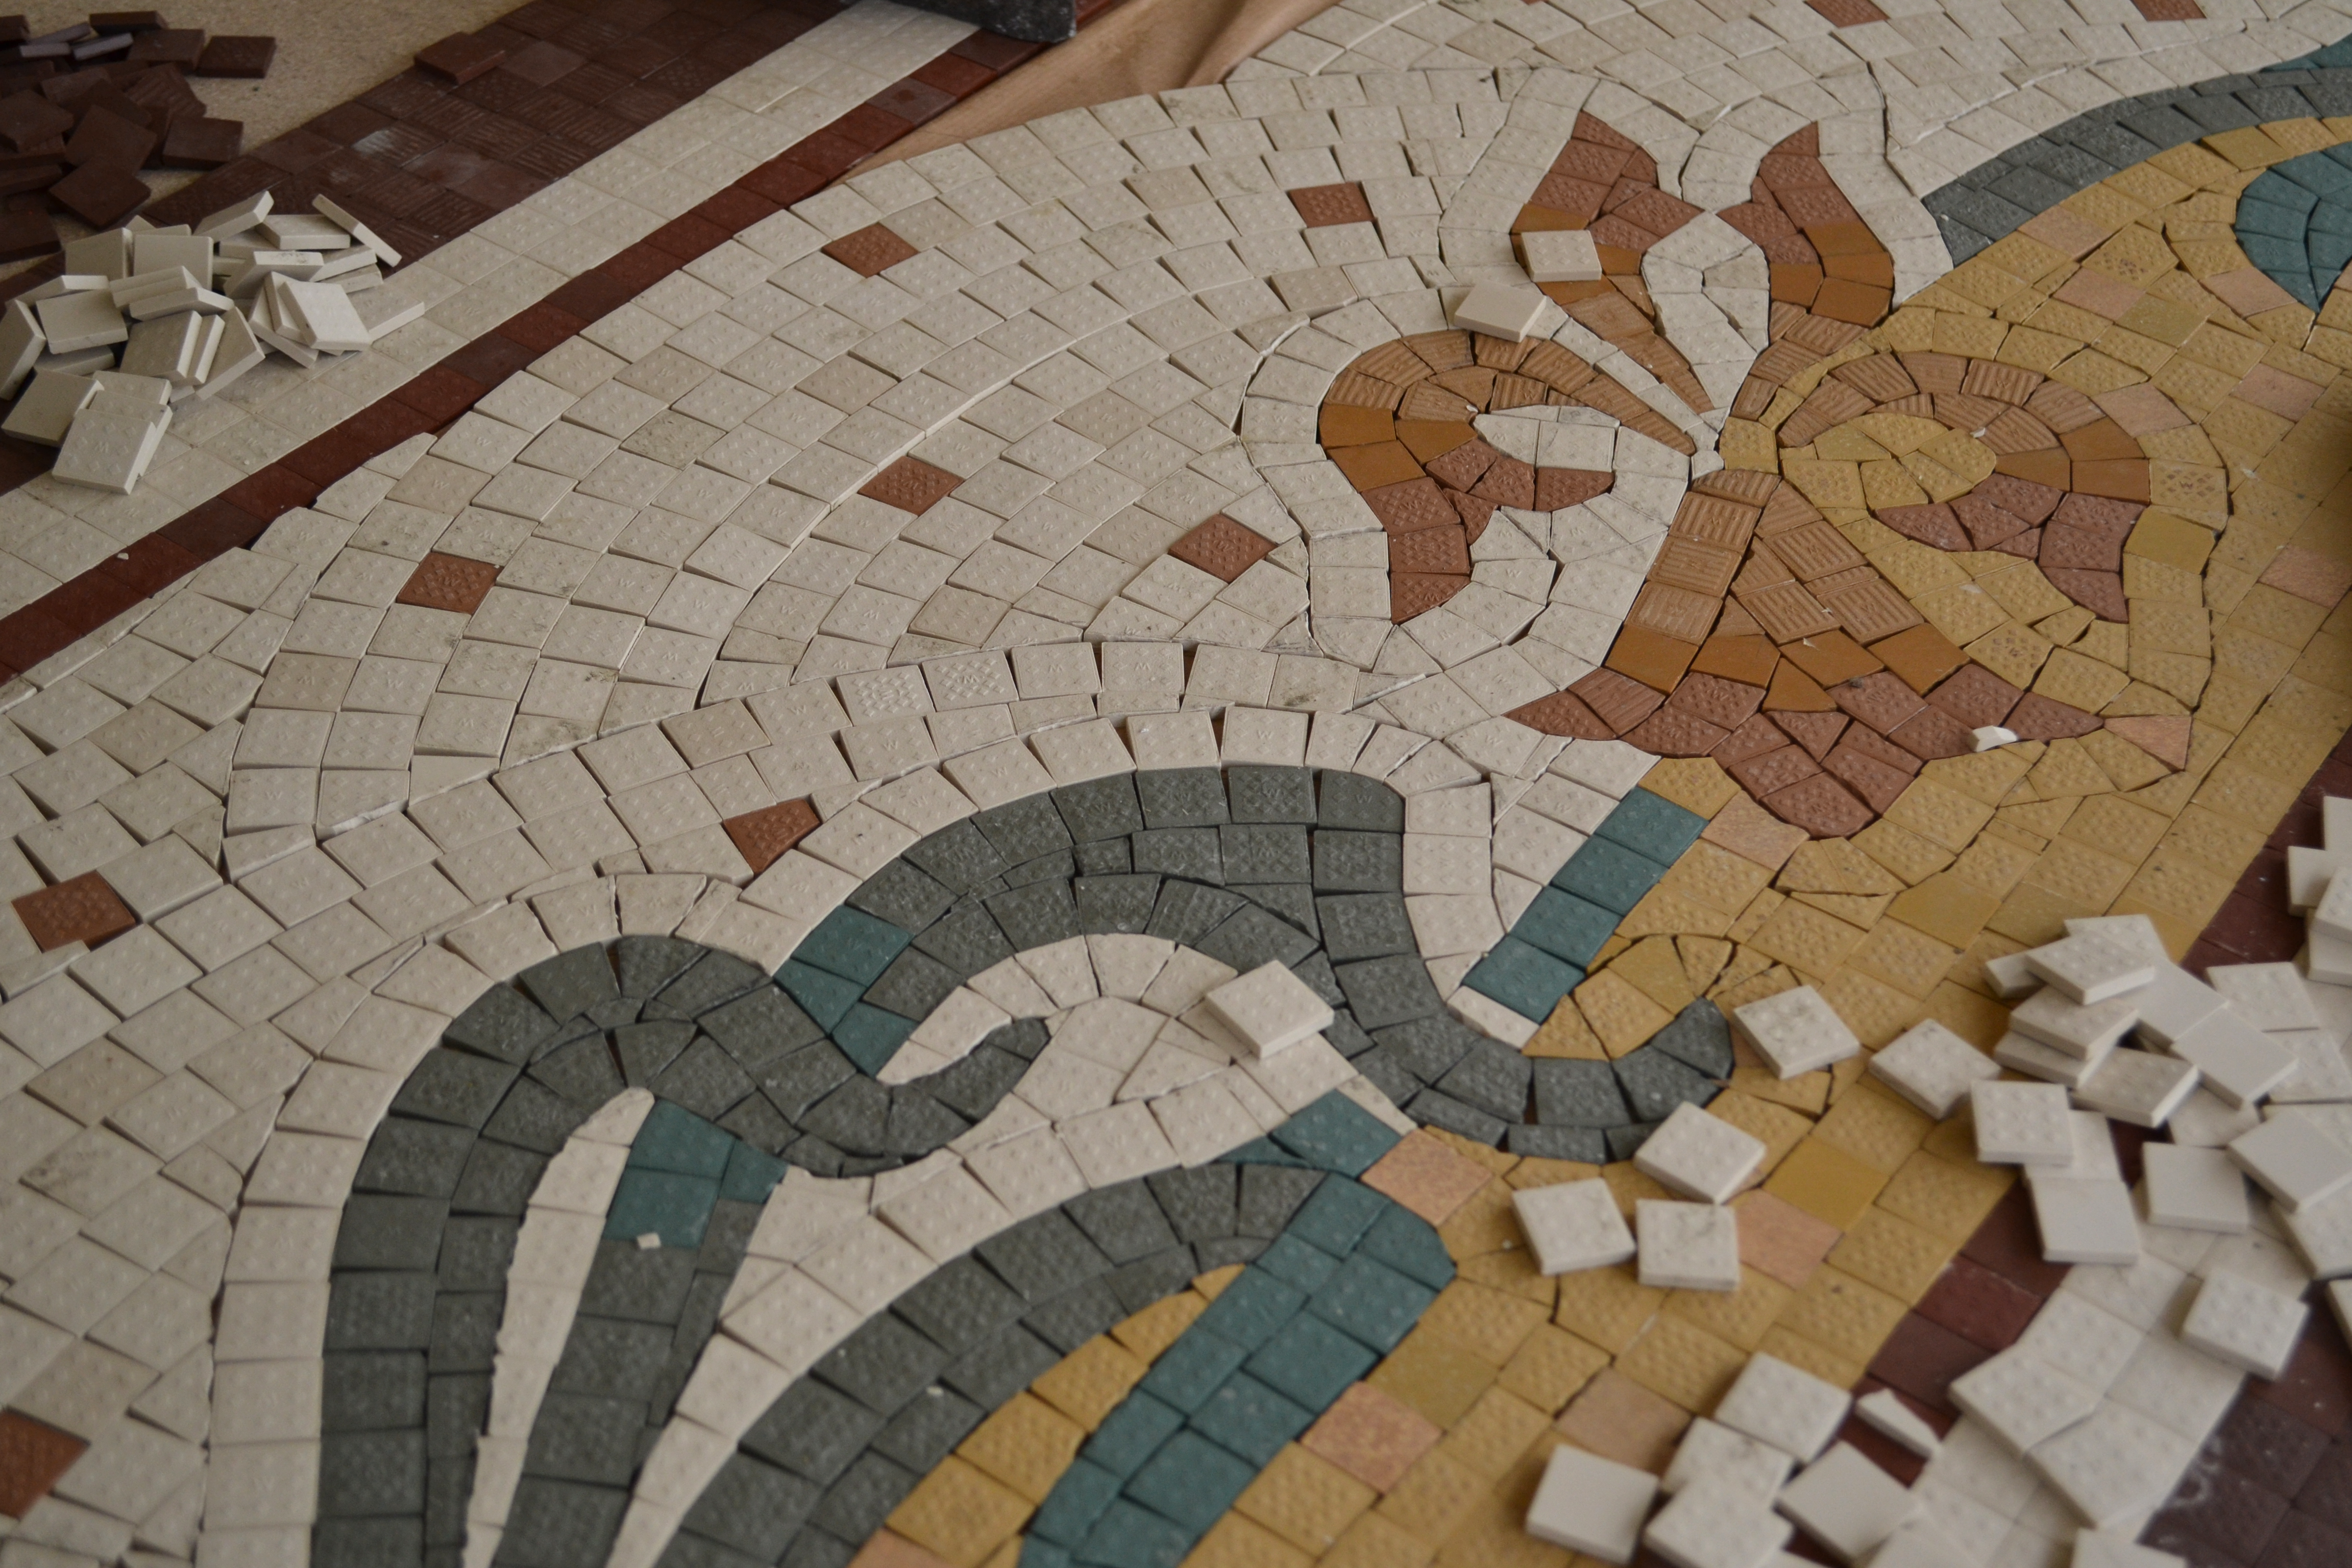 Restauration de sol en mosaïque de type Art Nouveau Fabrication des anciens motifs à l'identique grès cérames industriels
Quartier Bourse de Commerce, Paris